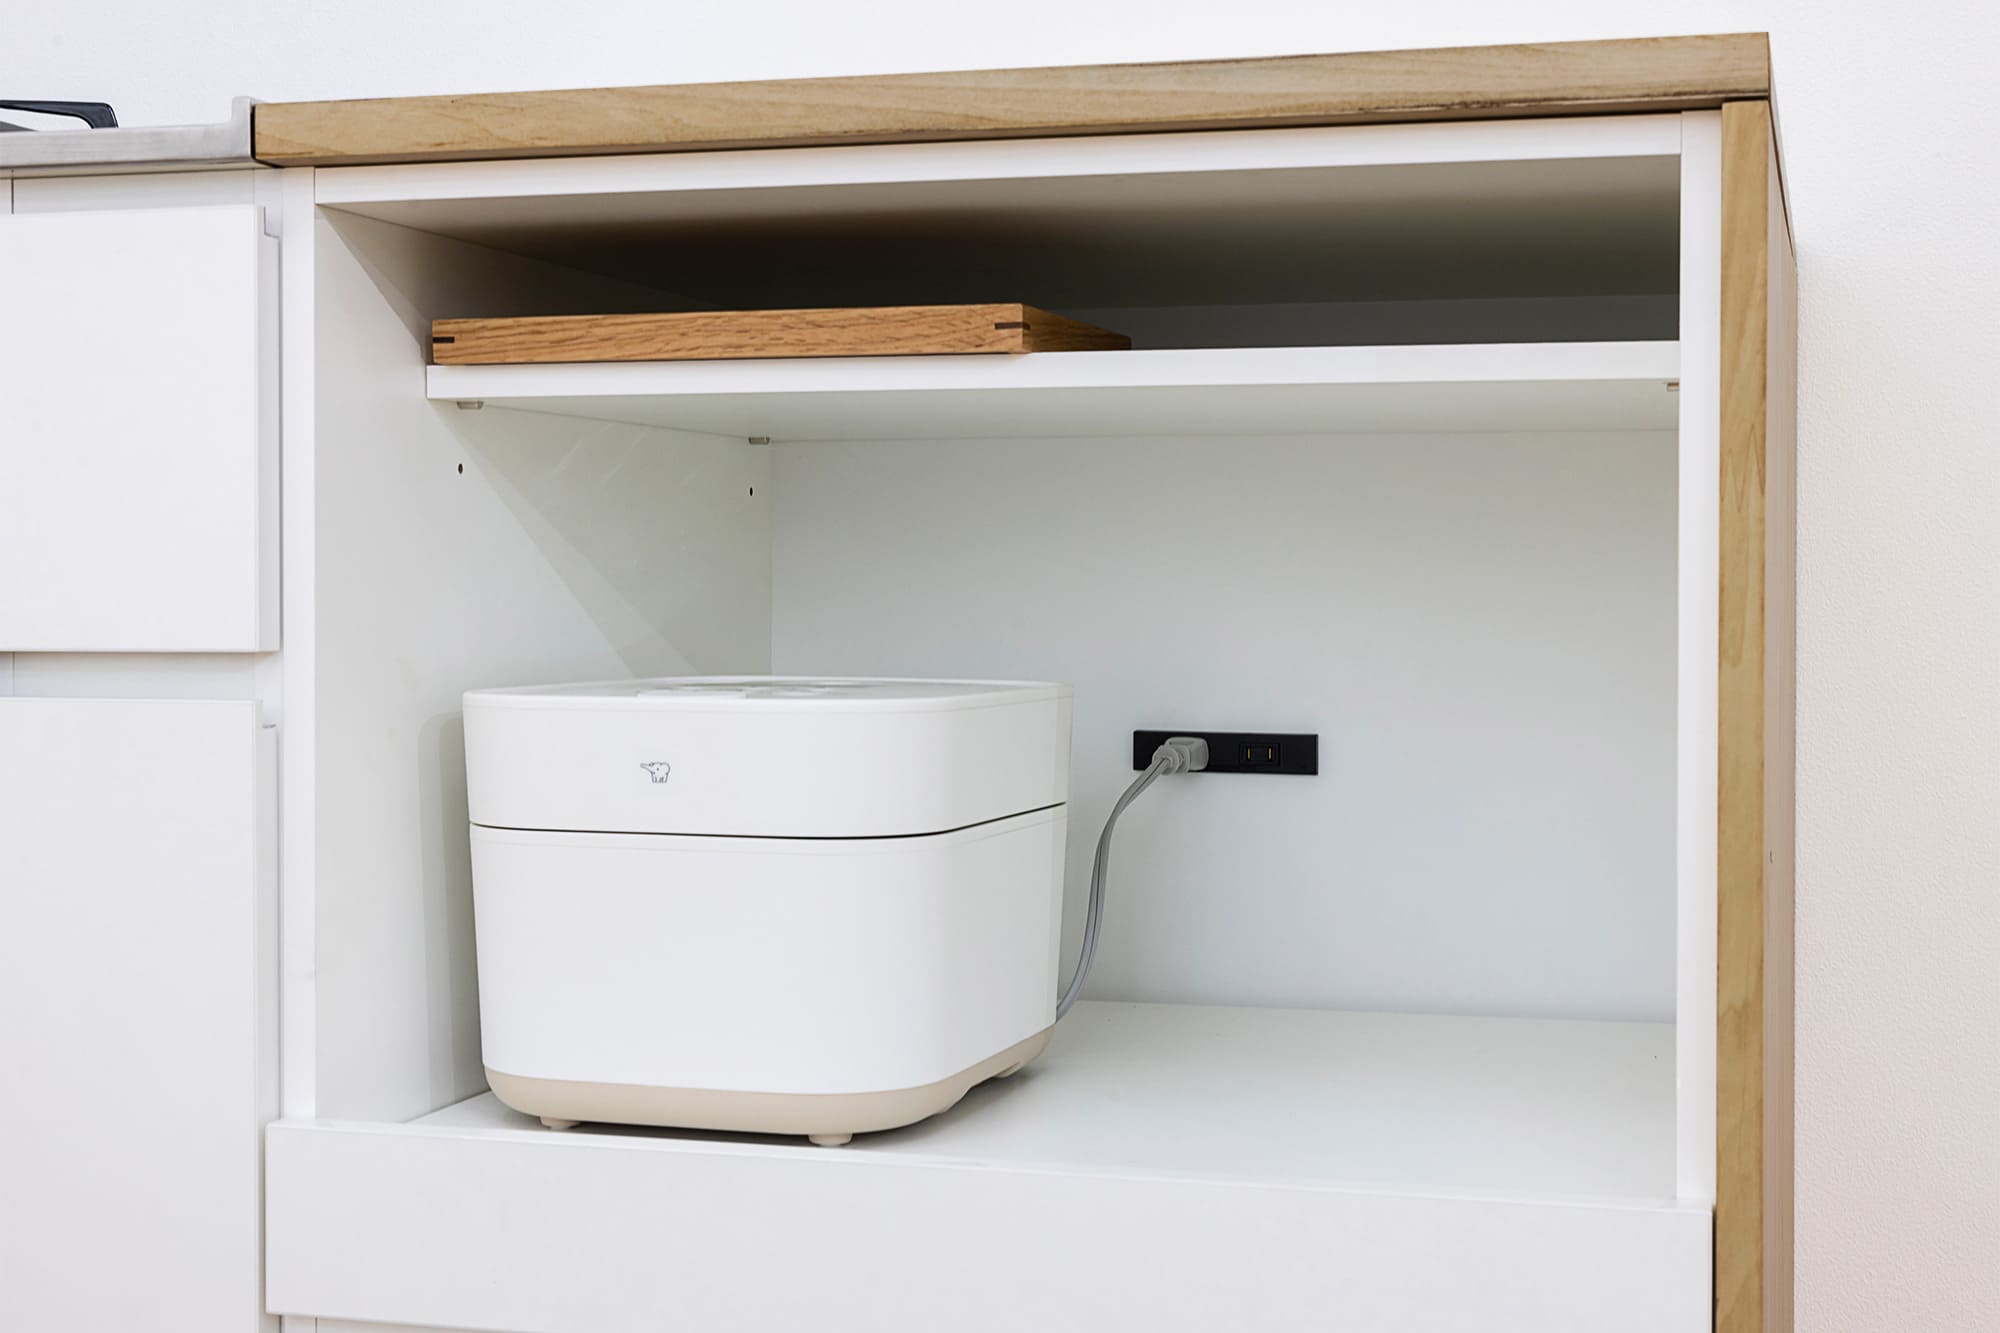 木天板キッチンⅡ型 壁付けコンロ側 オーブンタイプ W1540～1990 KB-KC029-10-G183 スライド収納にはコンセントと、上部に可動棚がついています